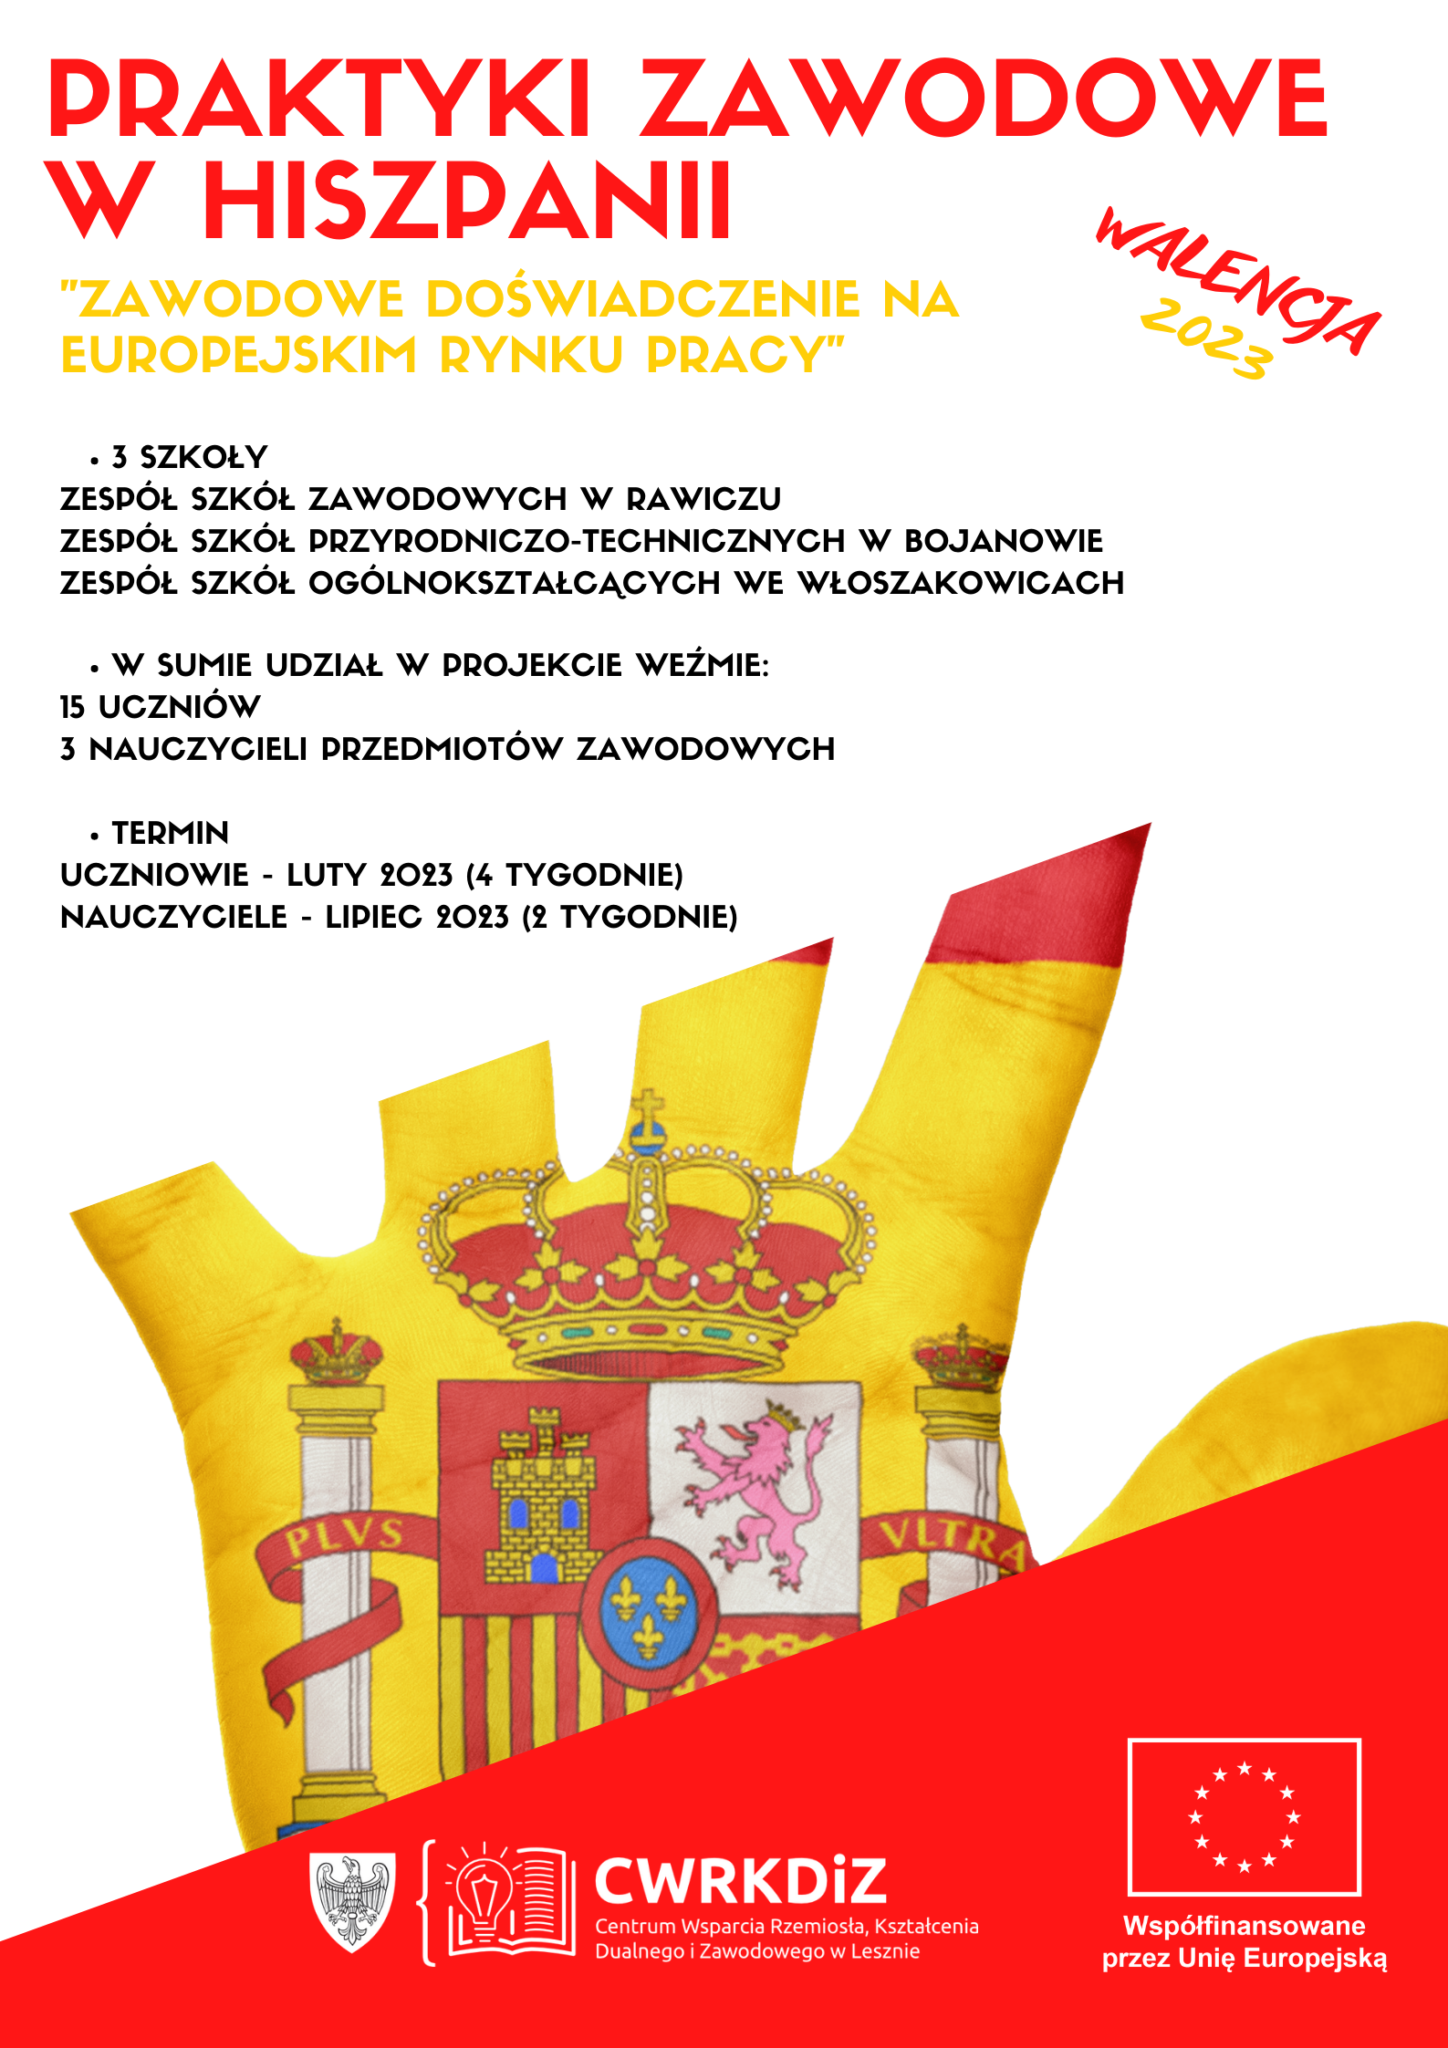 Plakat przedstawia krótko najważniejsze informacje o projekcie, logotyp CWRKDiZ w Lesznie oraz informację o współfinansowaniu przez Unię Europejską oraz rozpostartą dłoń z wymalowaną na niej flagą Hiszpanii.